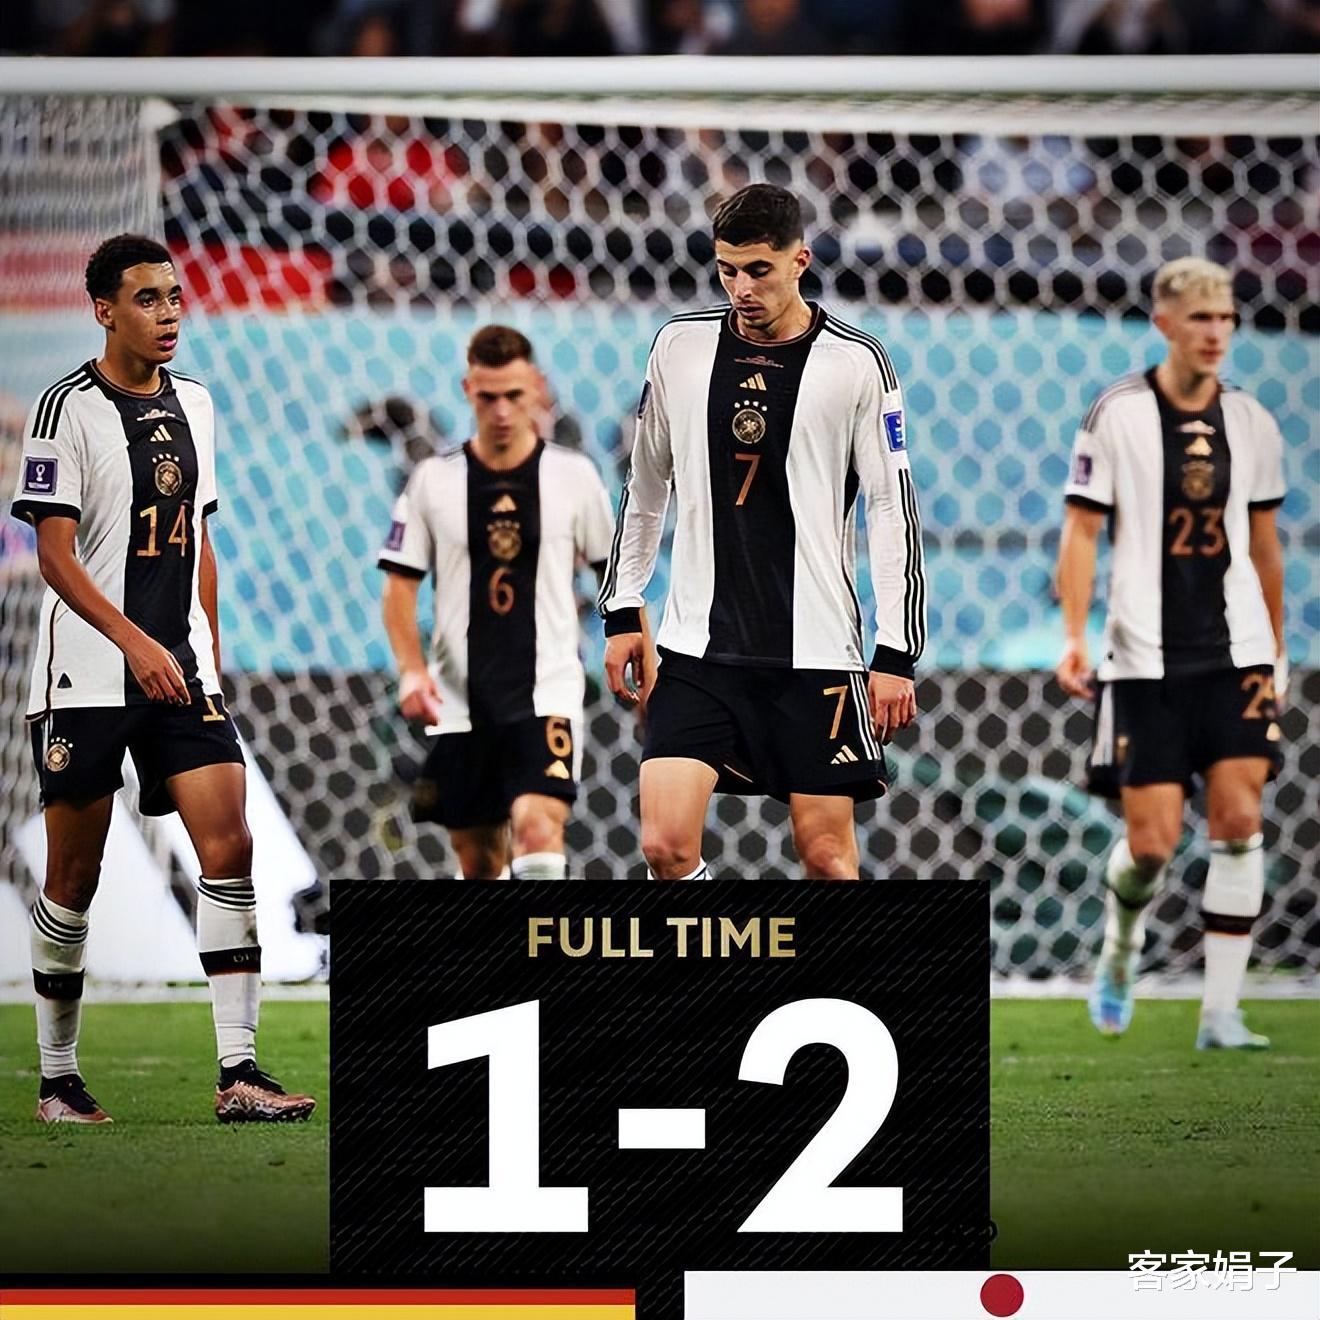 输不起！德国队1-2惨败输日本遭群嘲，德国球迷全场爆怒失态！(1)